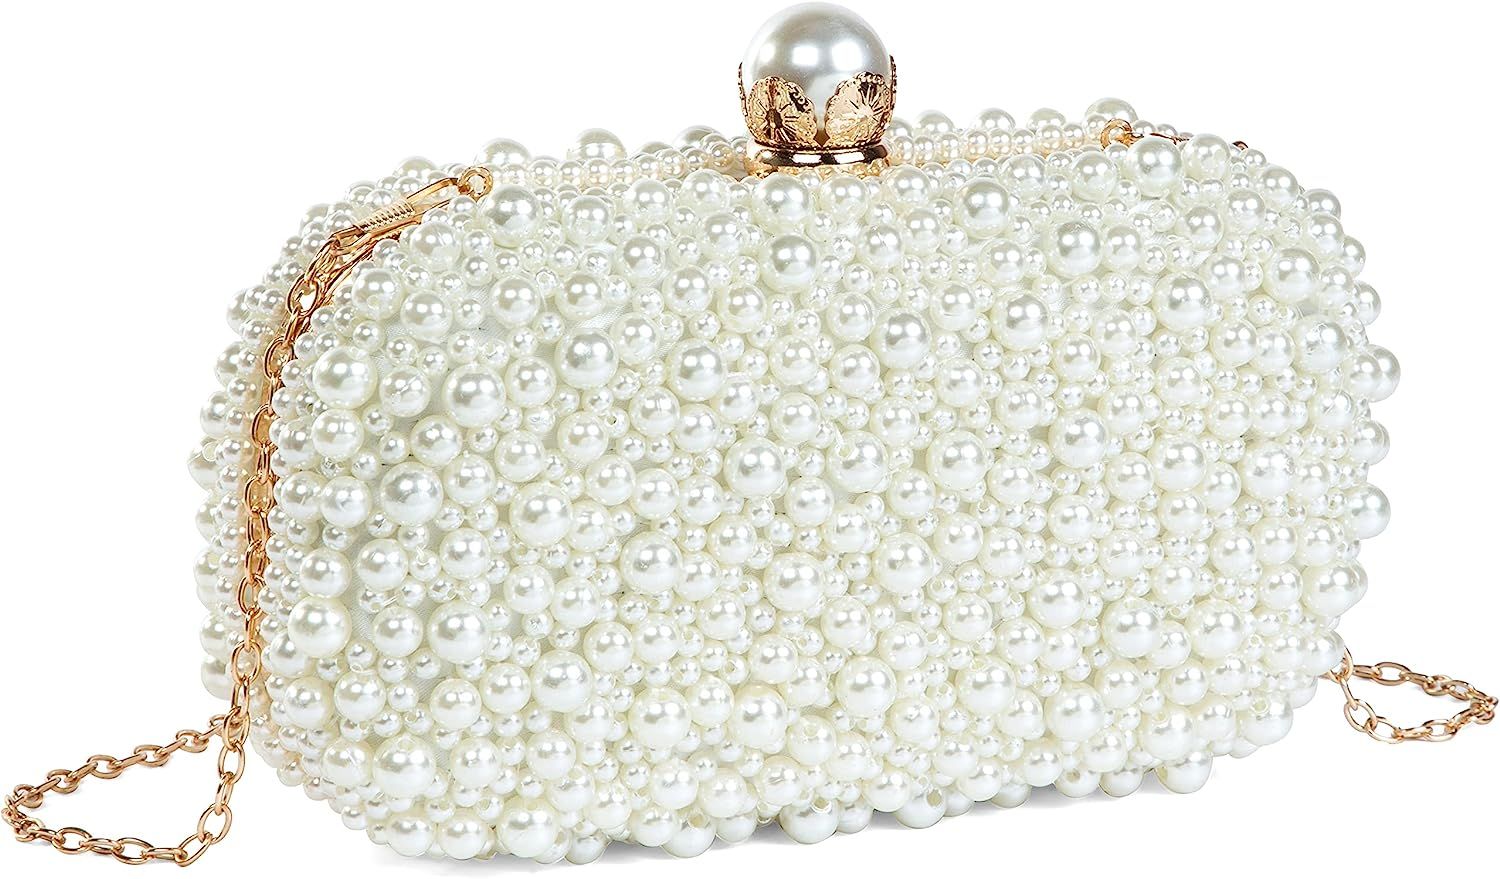 YYIHER Women's Evening Handbags Pearl Clutch Purse Beaded bag Bridal Clutch wedding Purse | Amazon (US)